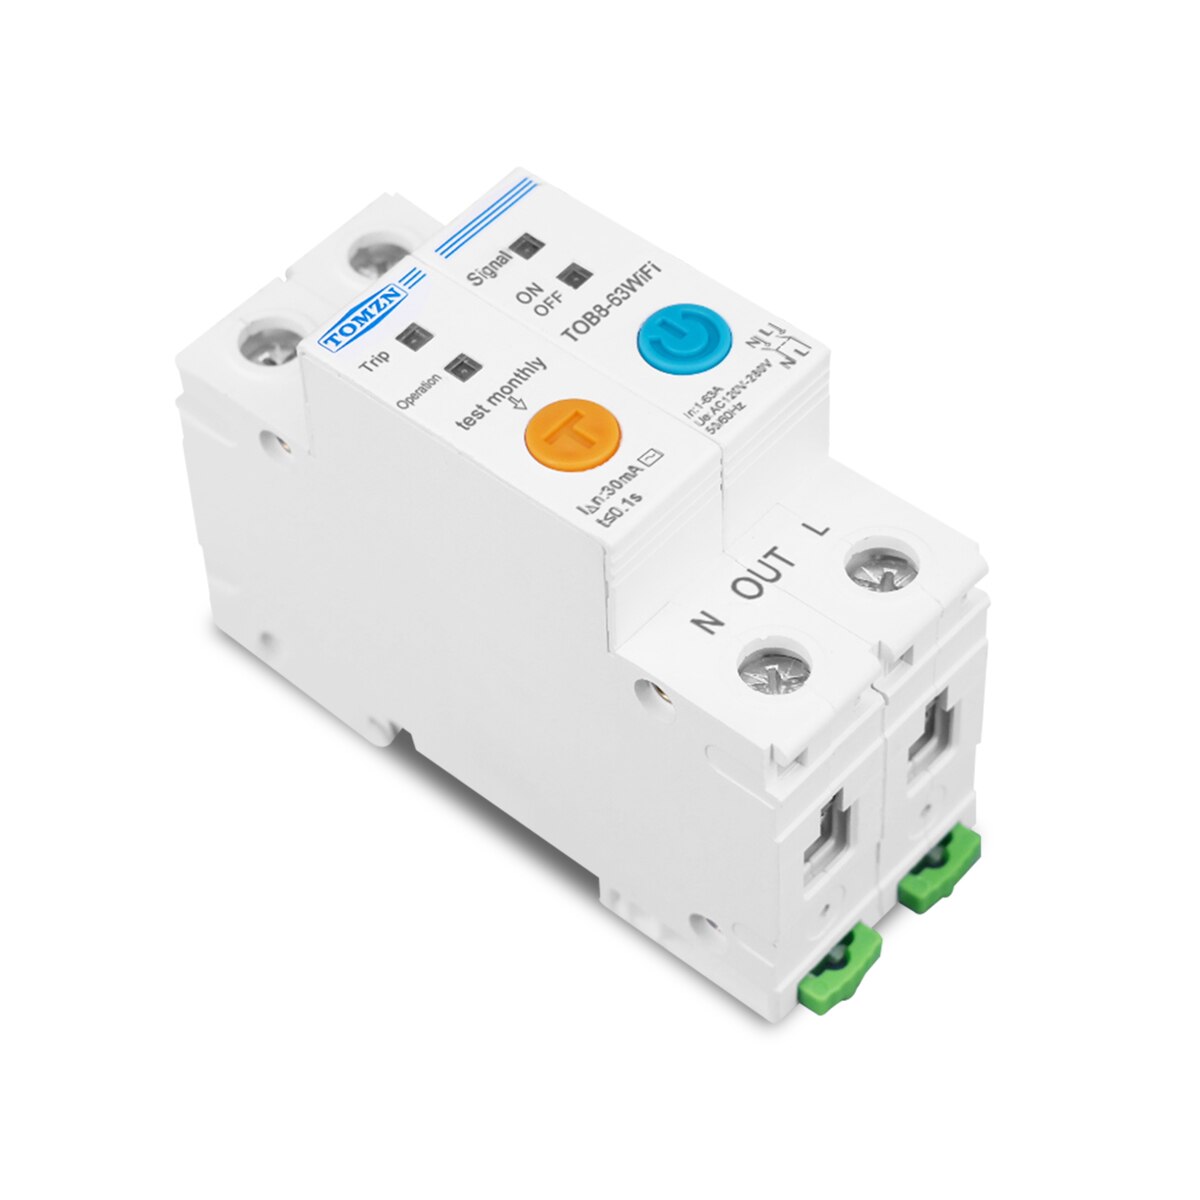 63A Ewelink Eenfase Wifi Smart Energy Meter Kwh Metering Monitoring Circuit Breaker Timer Relais Met Lekkage Bescherming